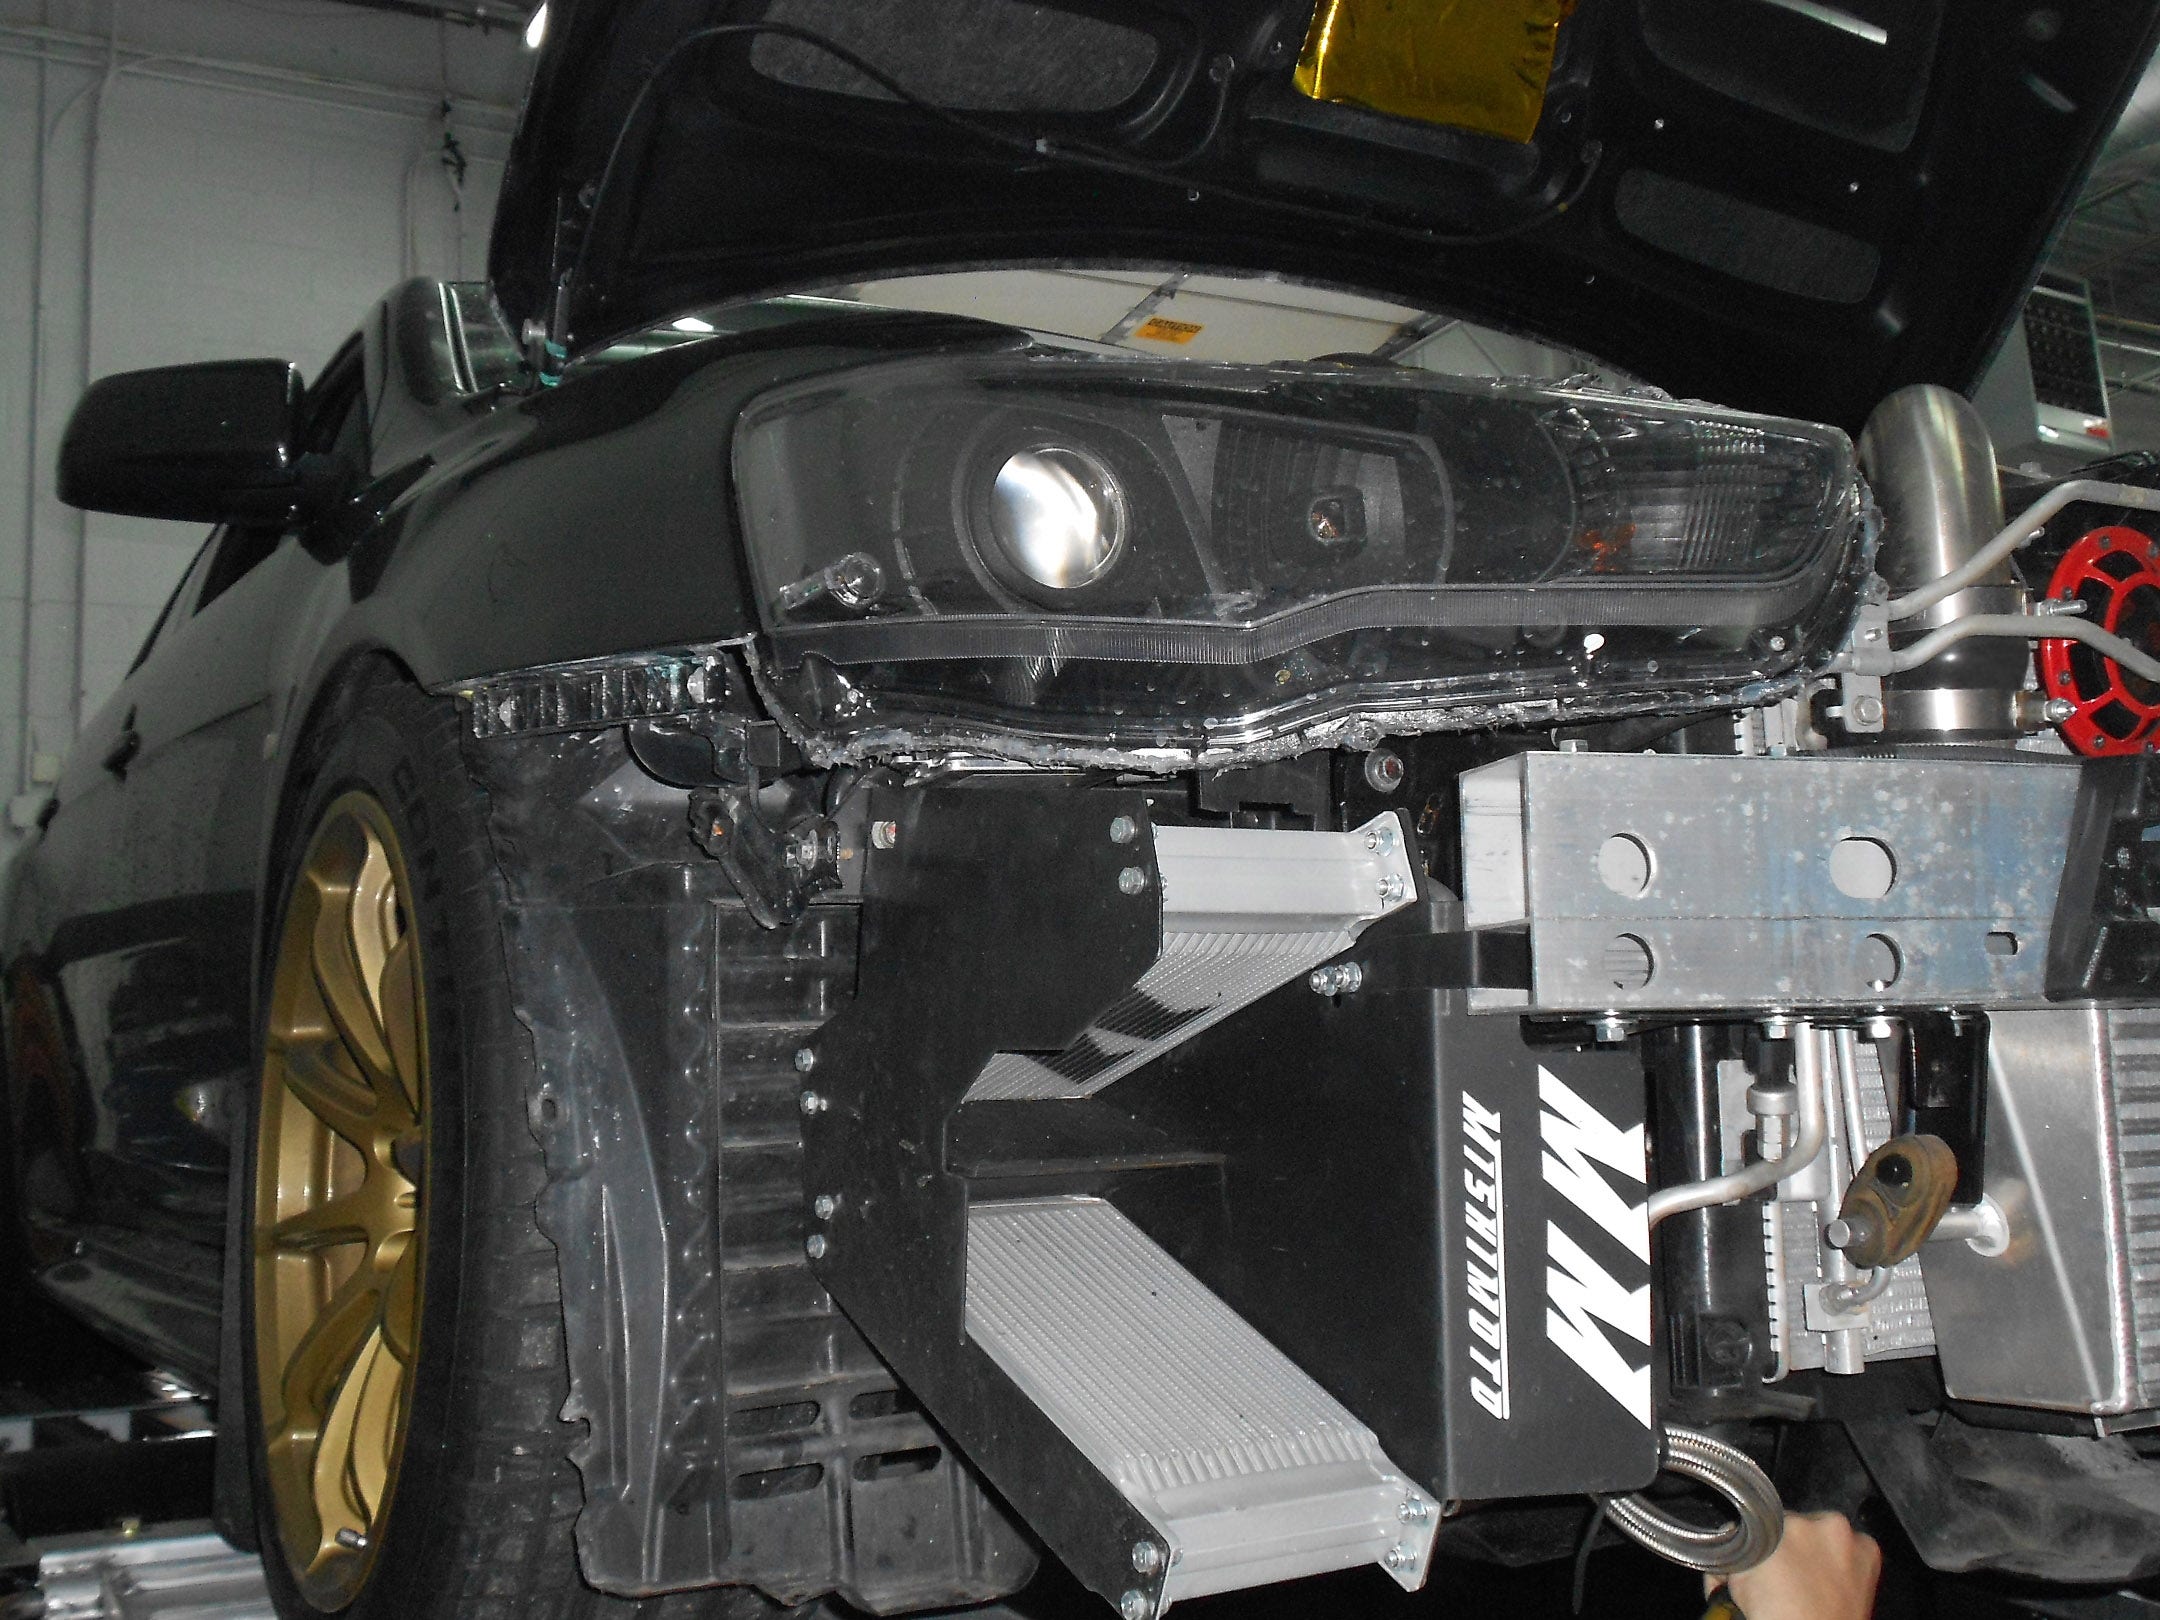 2008–2014 Mishimoto Lancer Evolution X Direct-Fit Oil Cooler Kit, Part 2: CAD Design and Product Testing